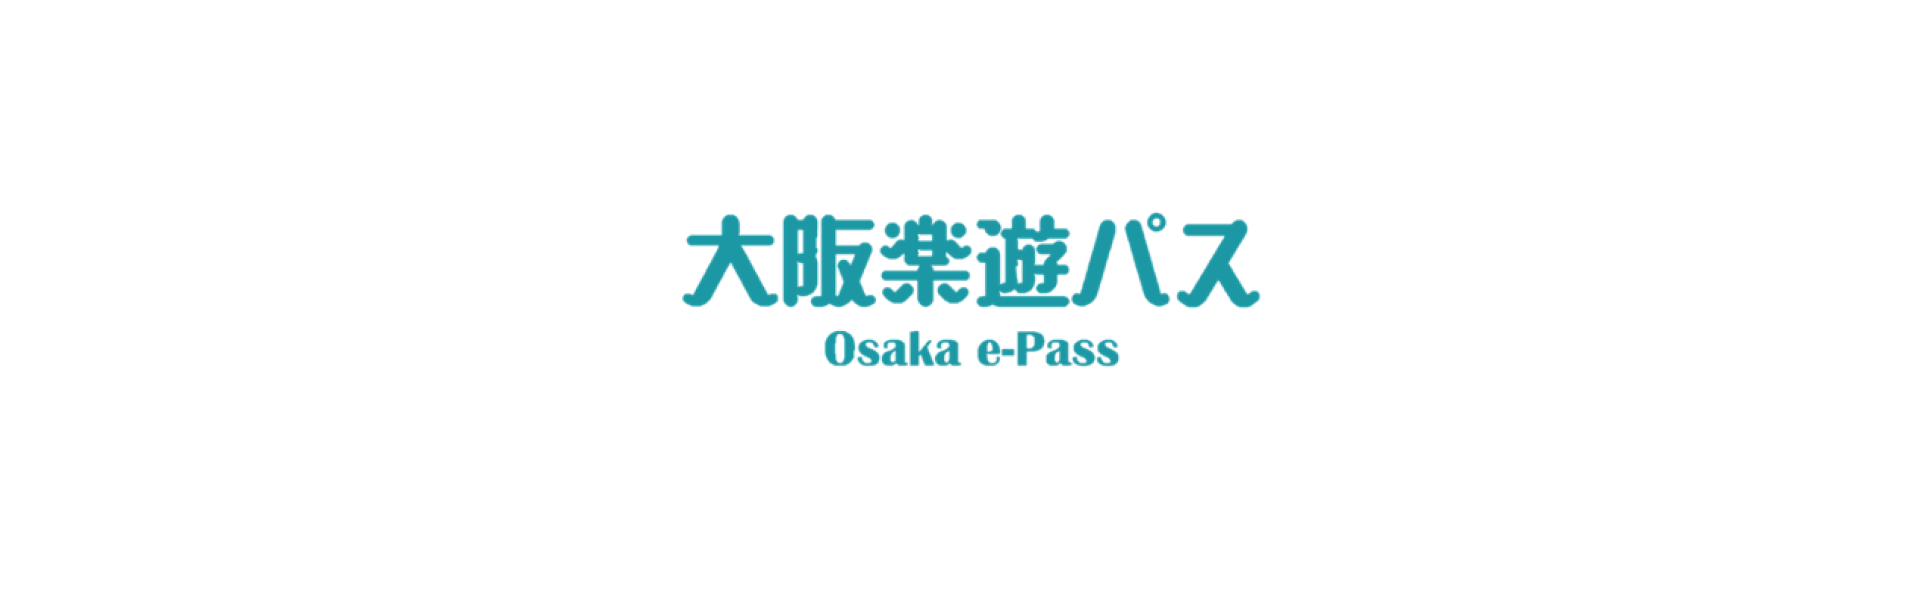 大阪觀光必備景點套票| 大阪樂遊券 OSAKA e-PASS